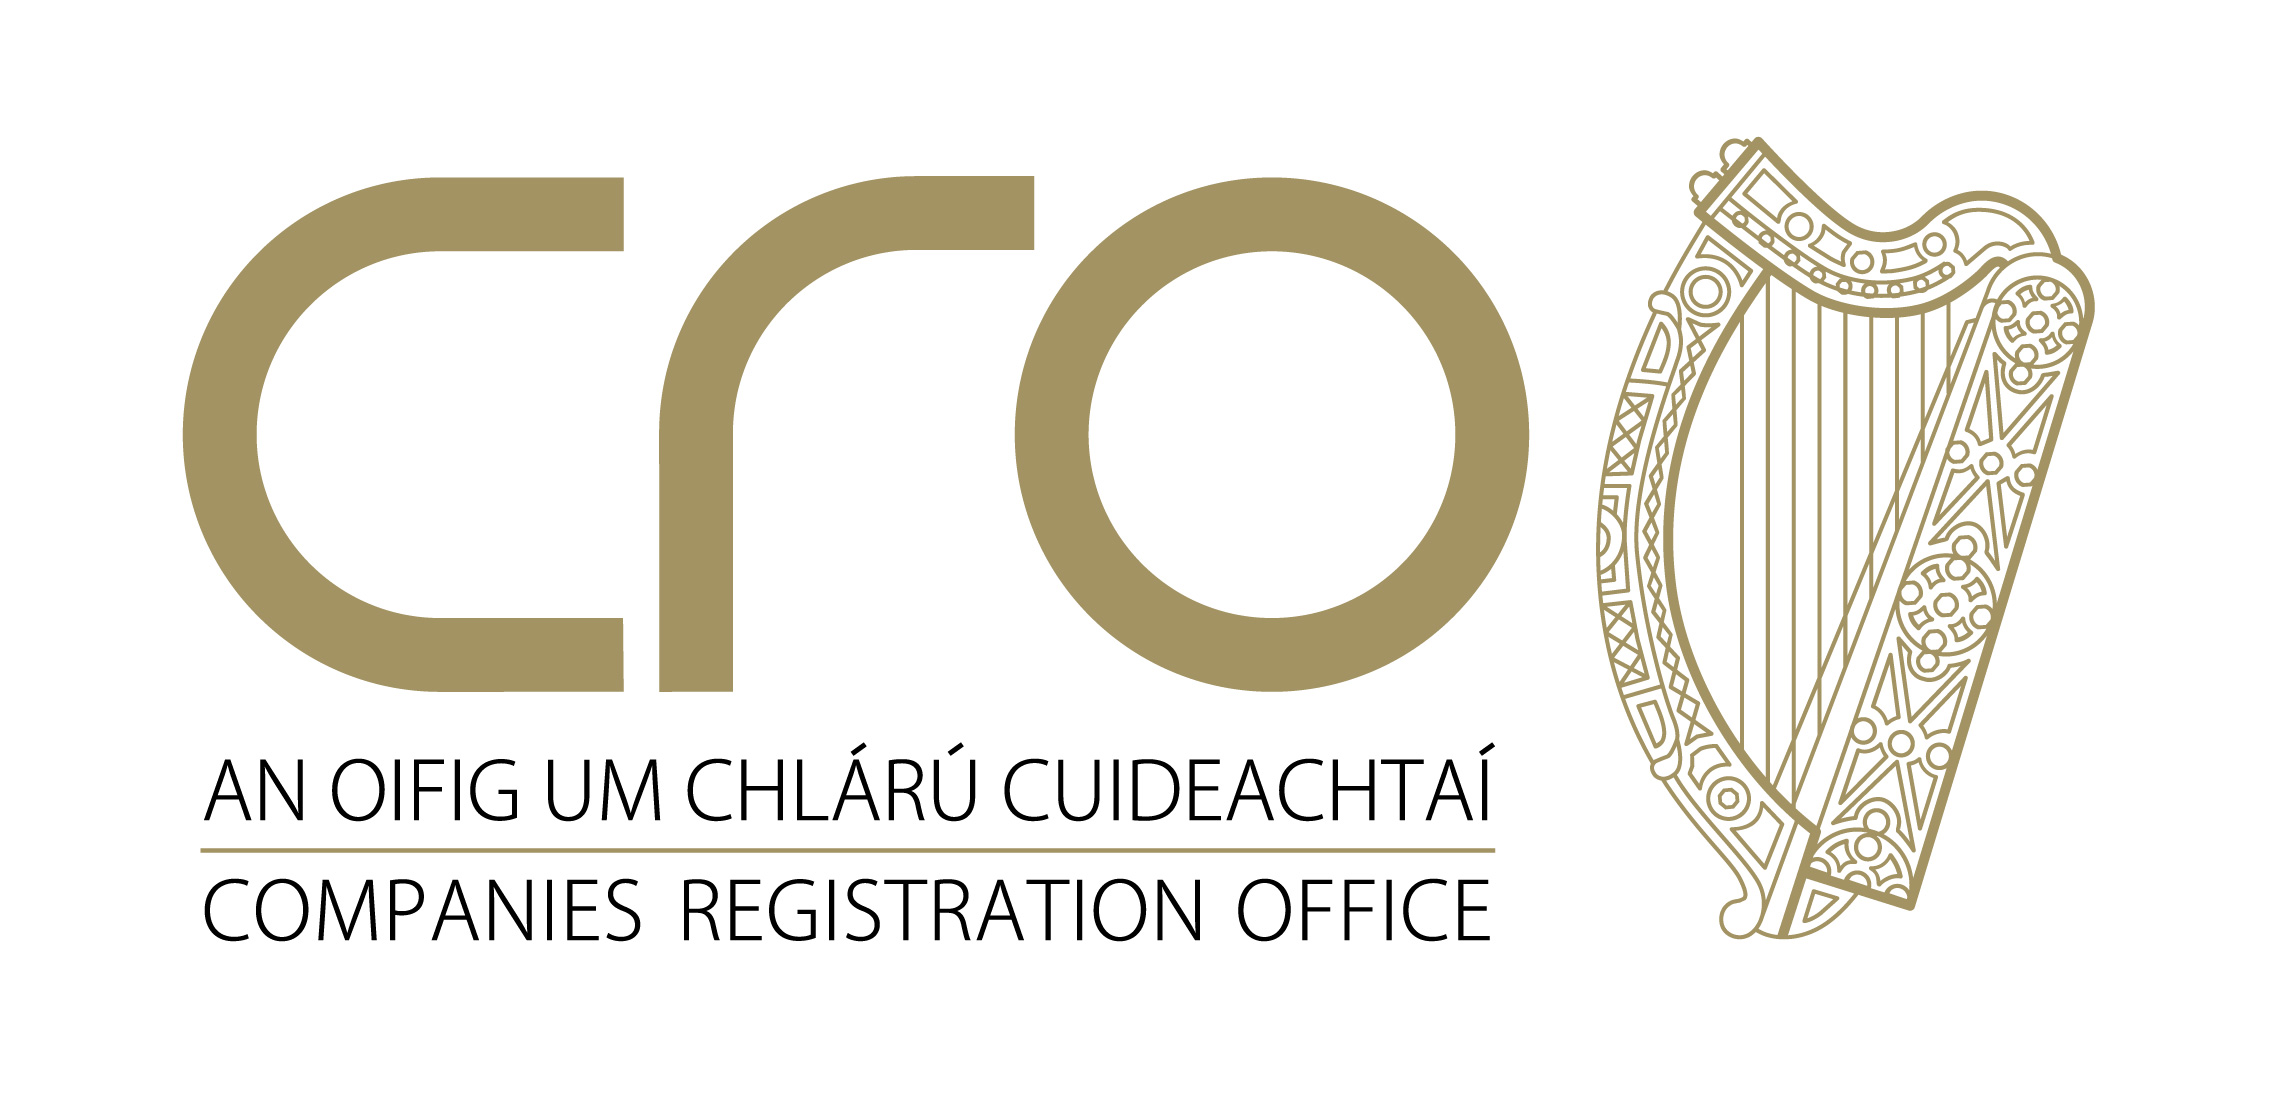 Registrars Office. Company Registration. The reg Company. Registrars Office logo.